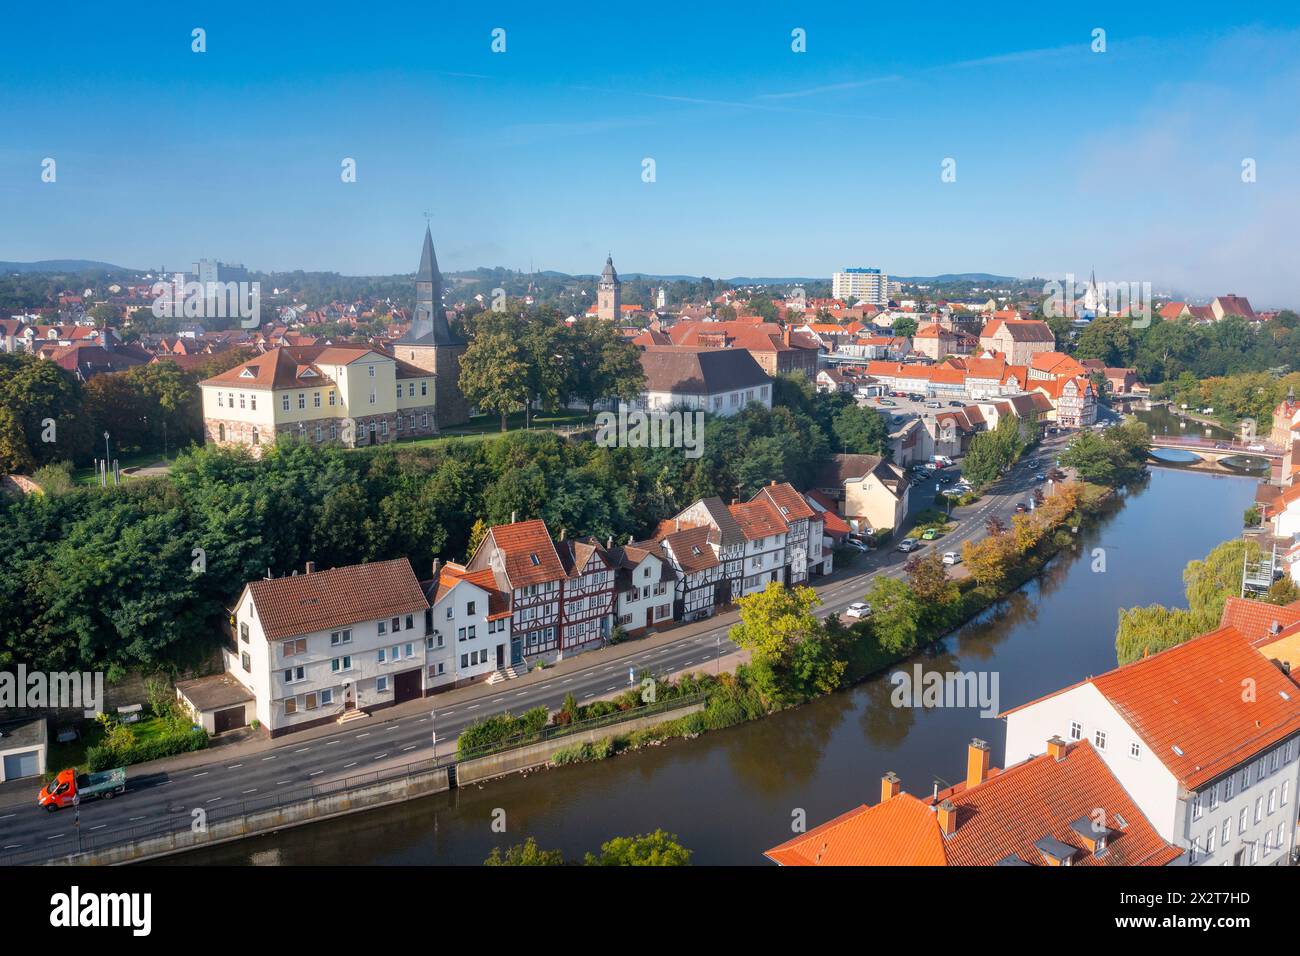 Allemagne, Hesse, Eschwege, vue aérienne des maisons historiques le long de la rivière Werra Banque D'Images